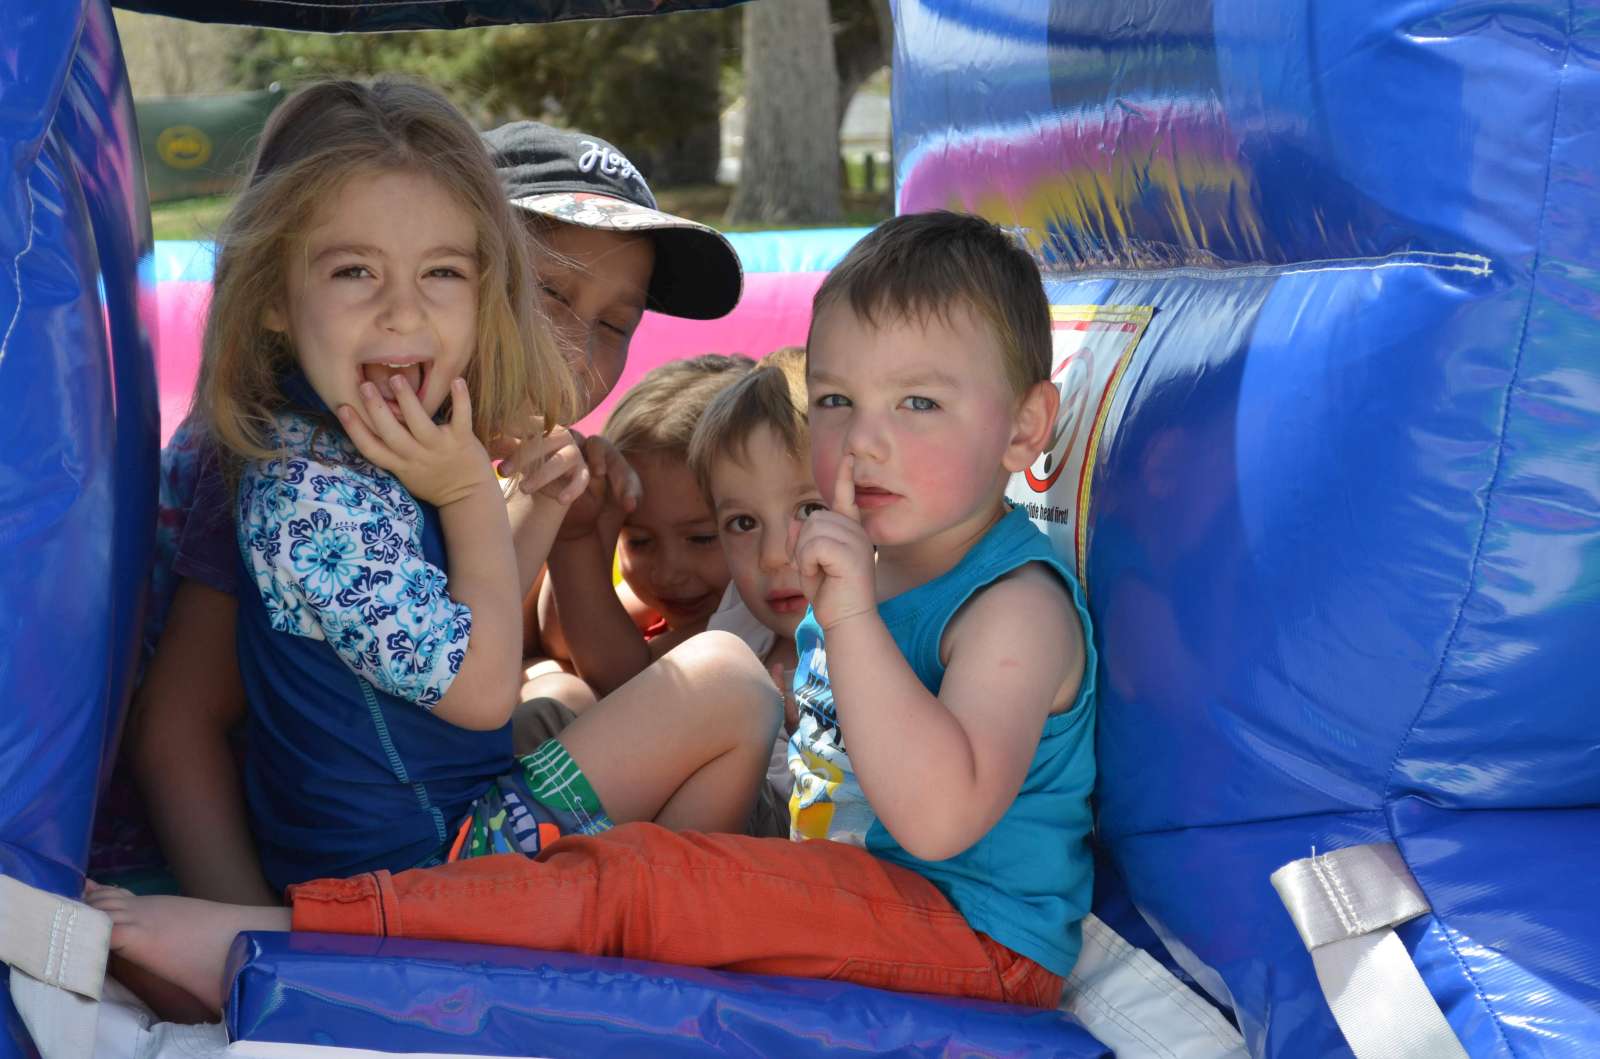 Children enjoying the bouncy houses